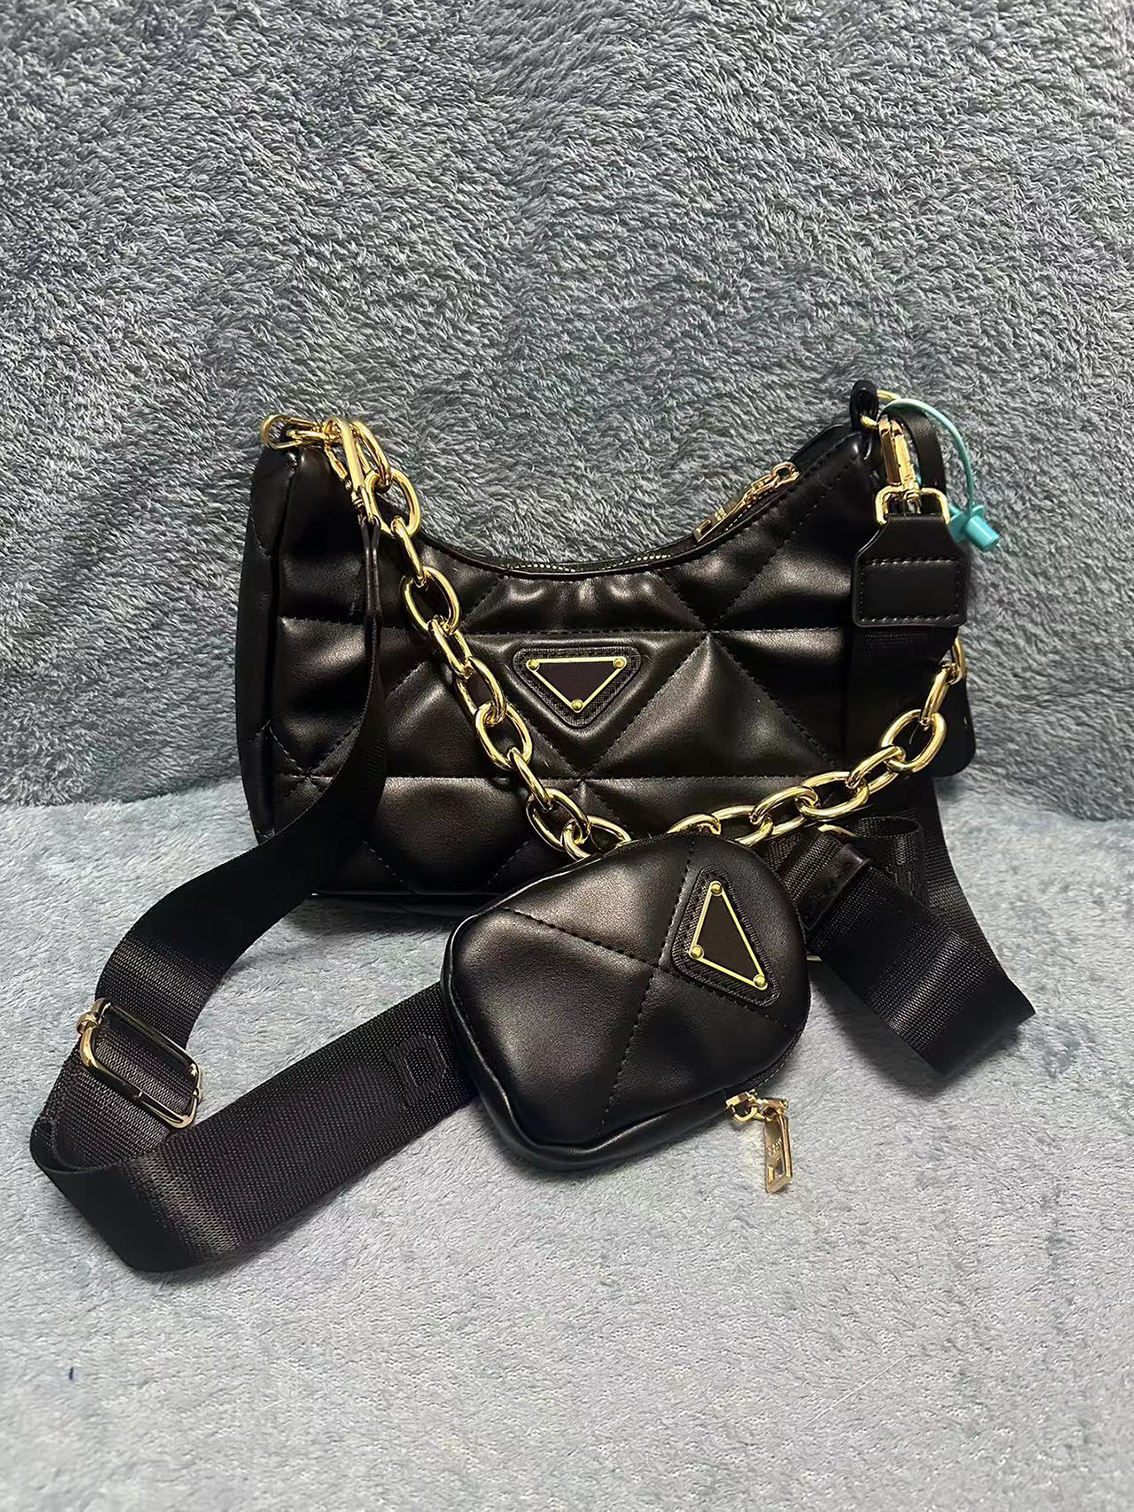 Crossbody -Bag -Umhängetaschen Designer -Taschen Handtasche Frauen Luxusmarke 3 in 1 Mode Frauen Goldkette Silber Kette Ledertasche Leinwand Tasche Multifunktionale Tasche